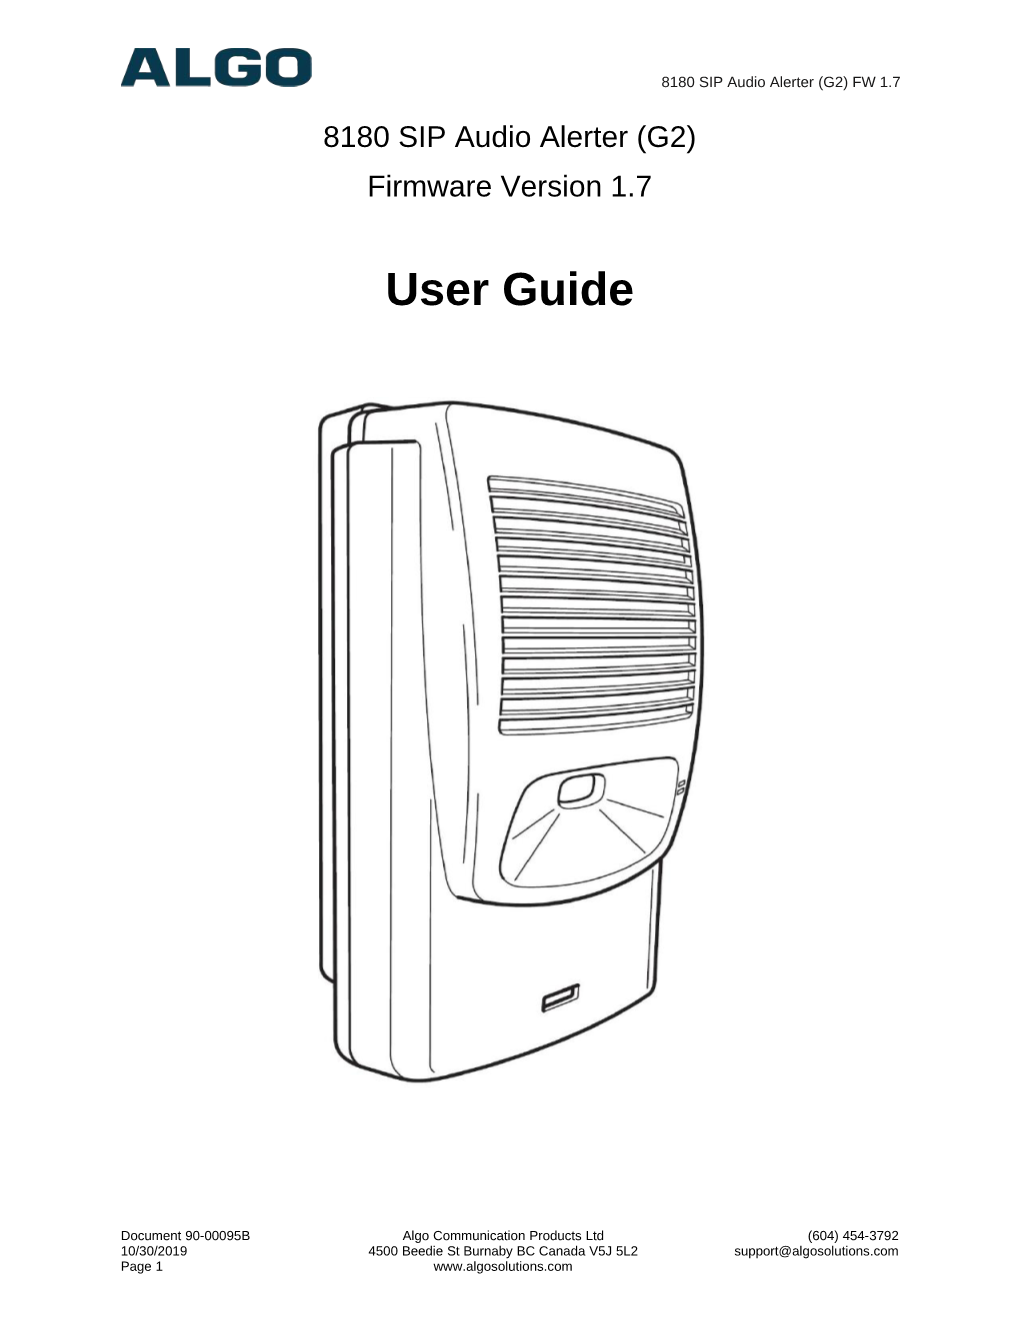 8180 G2 User Guide